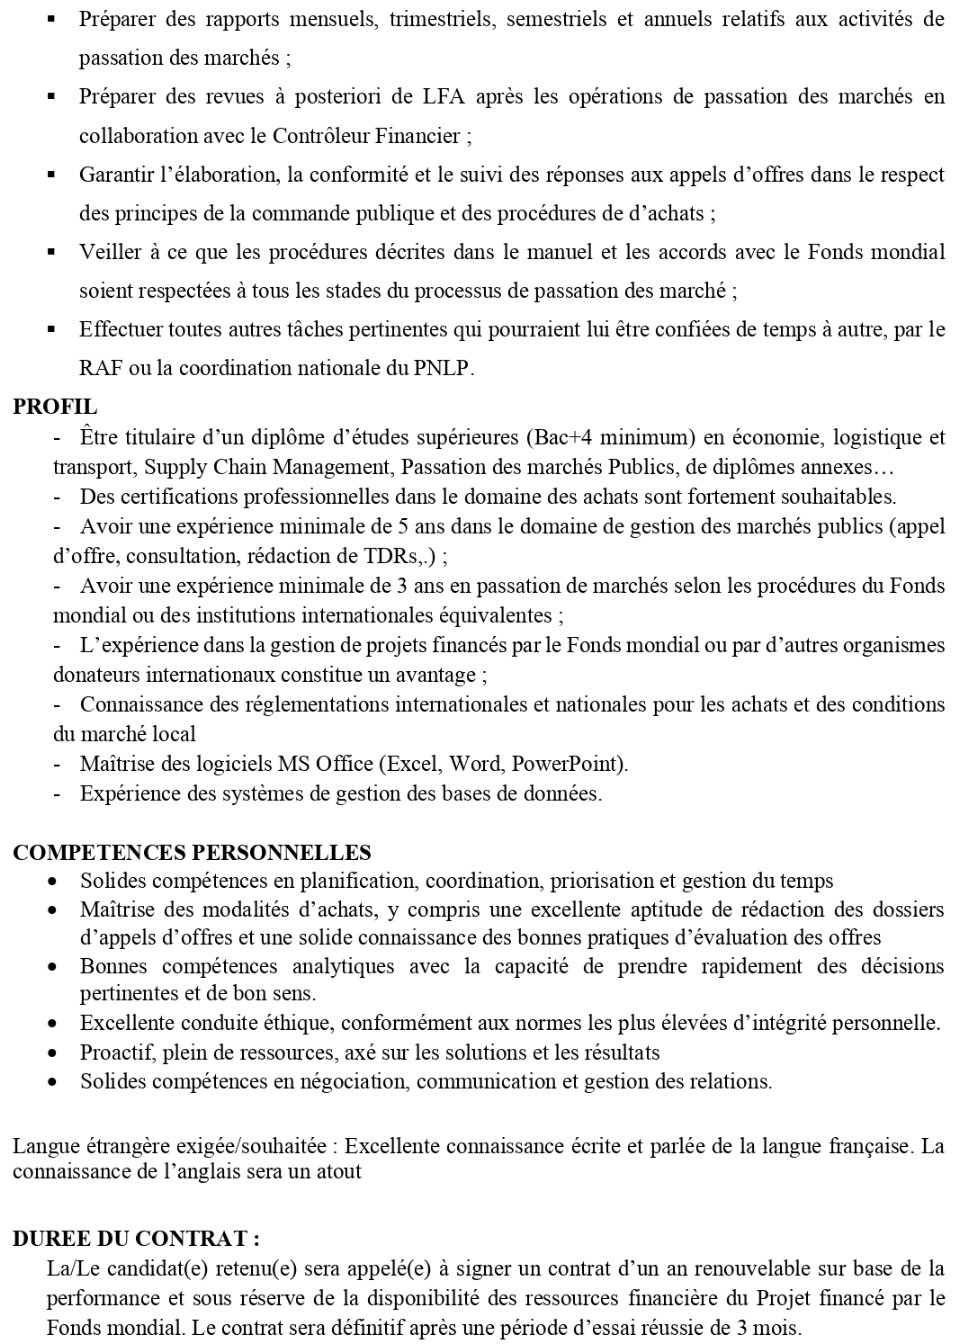 AVIS DE RECRUTEMENT D'UN(E) SPECIALISTE EN PASSATION DES MARCHES DU PNLP | Page 3